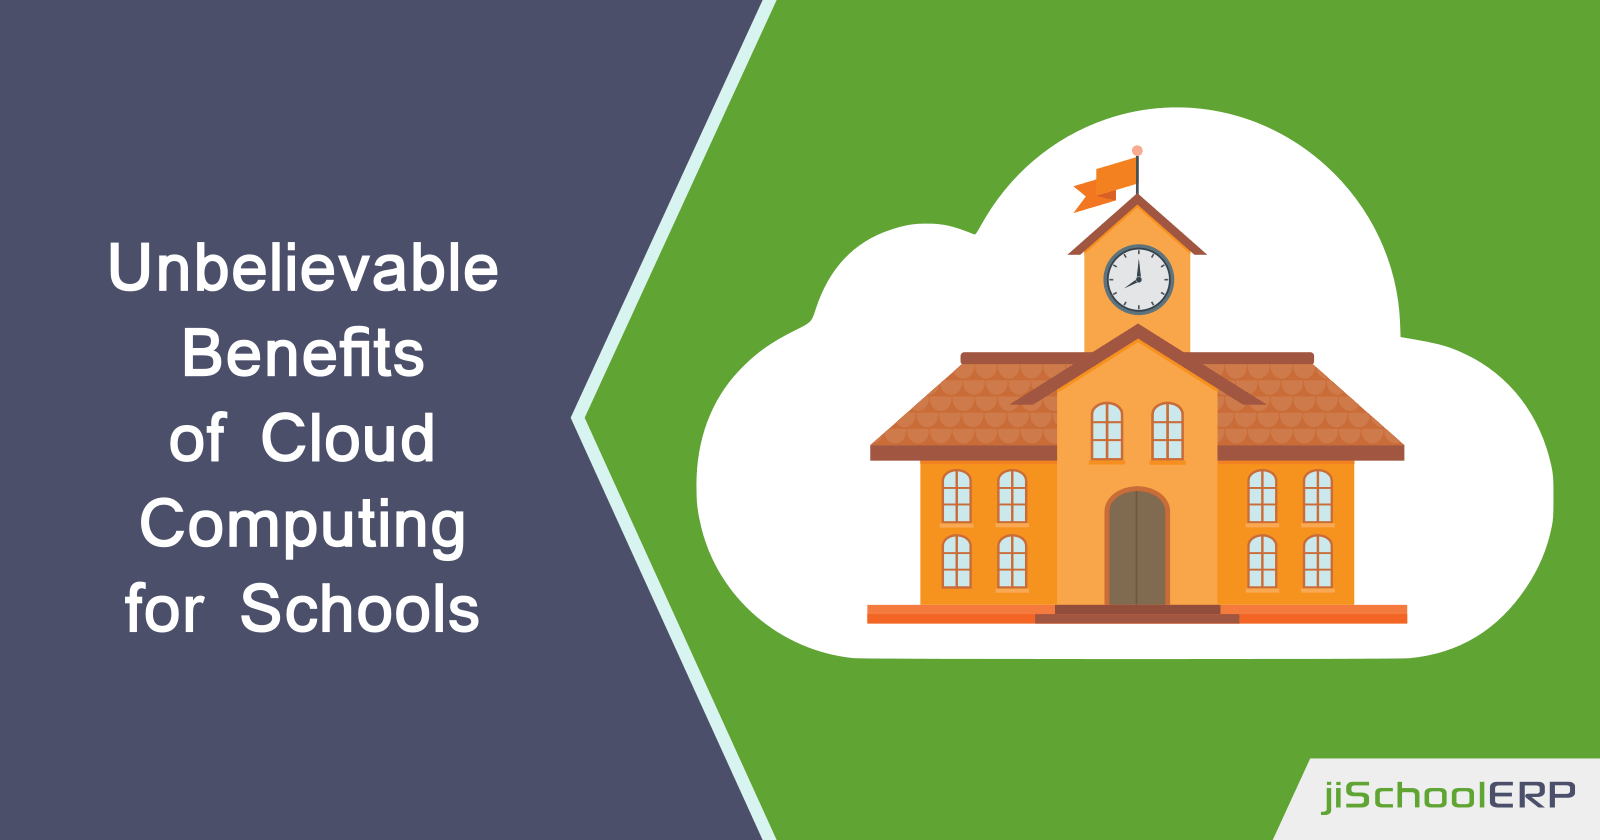 Unbelievable Benefits of Cloud Computing for Schools